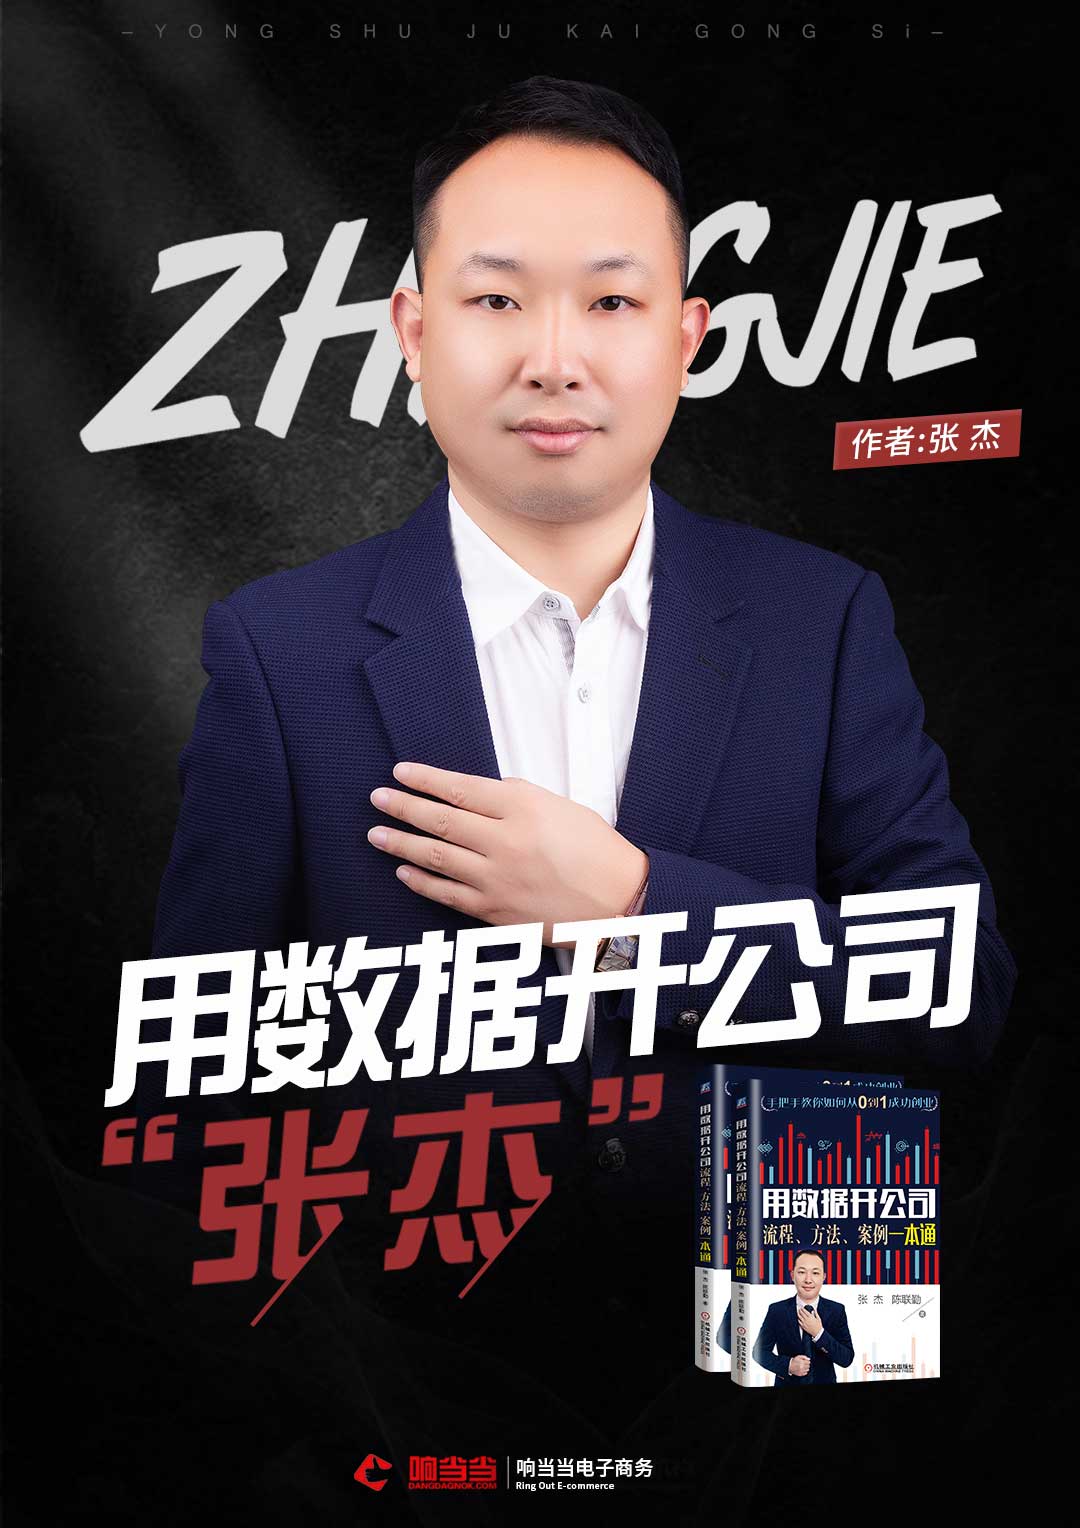 畅销书作者:张杰的个人介绍 谭一春创始人;深圳市响当当电子商务有限